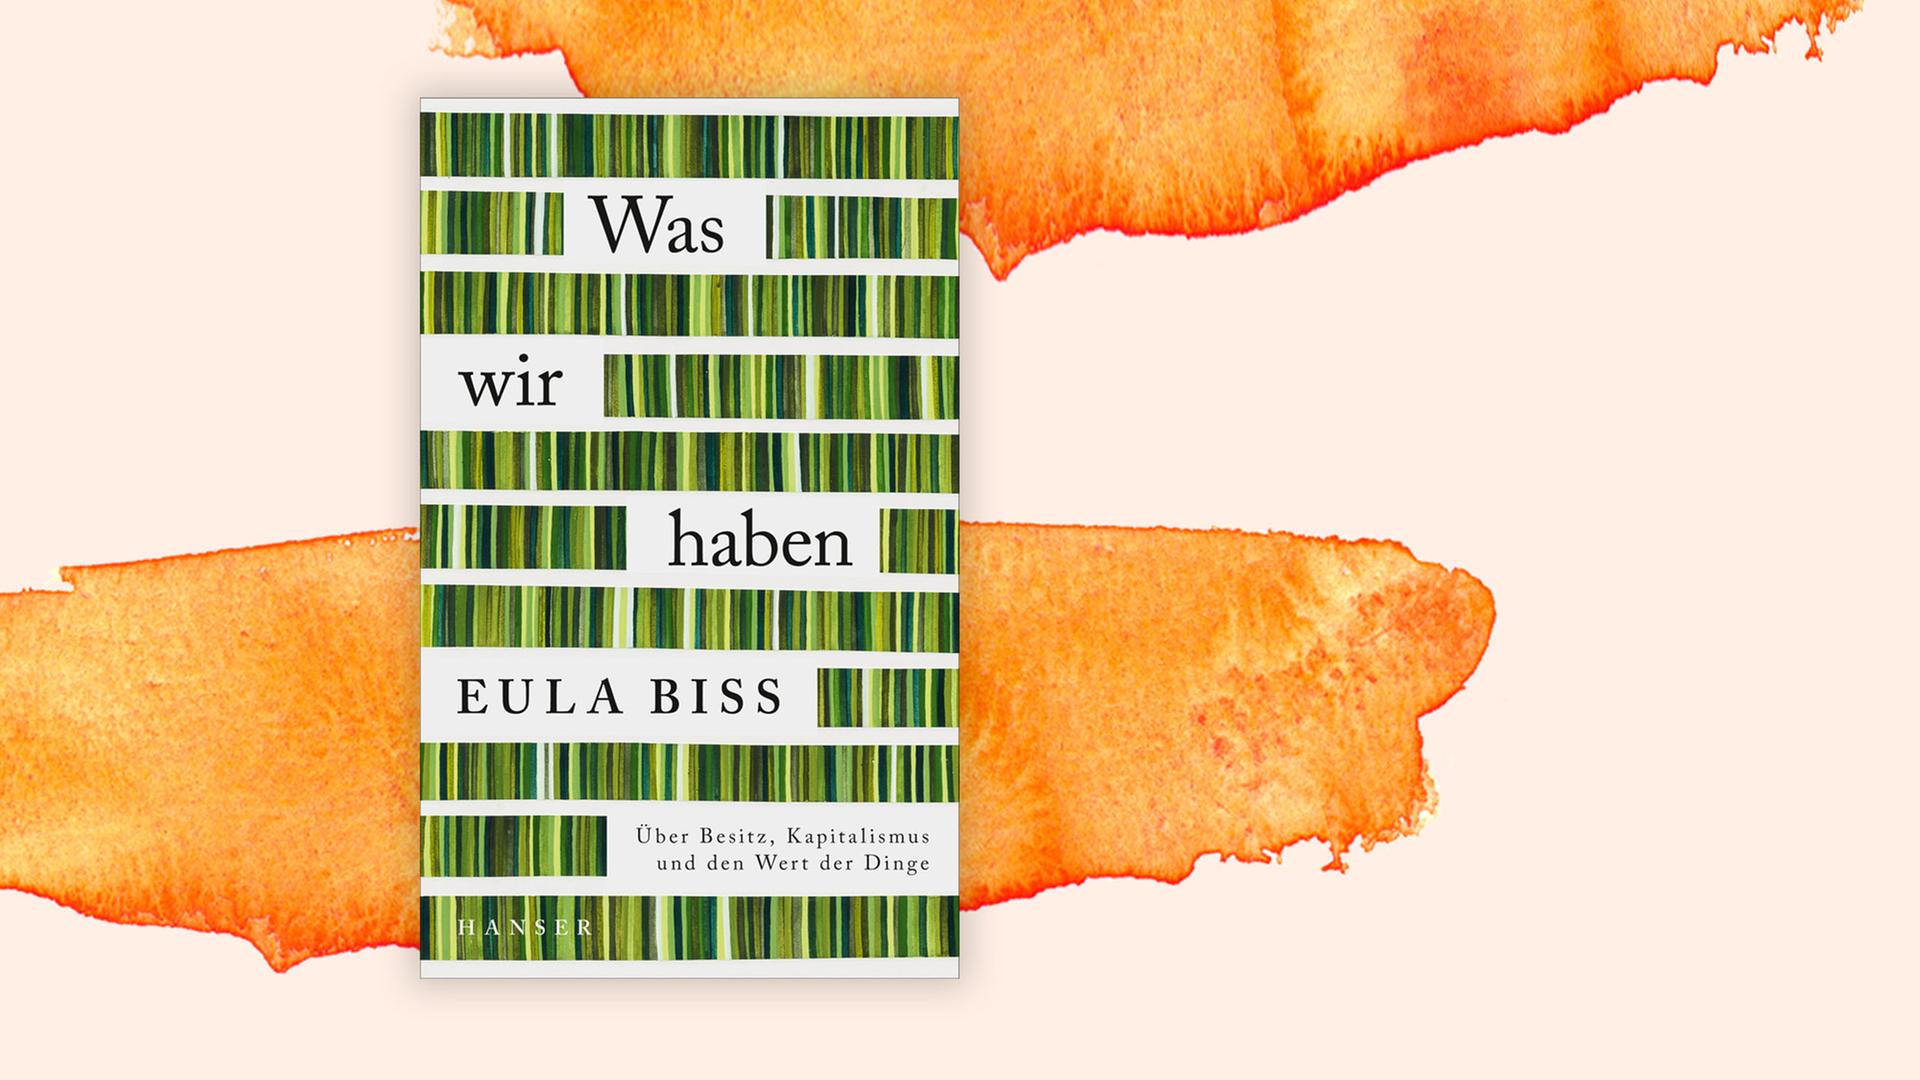 Buchcover zu "Was wir haben" von Eula Biss.